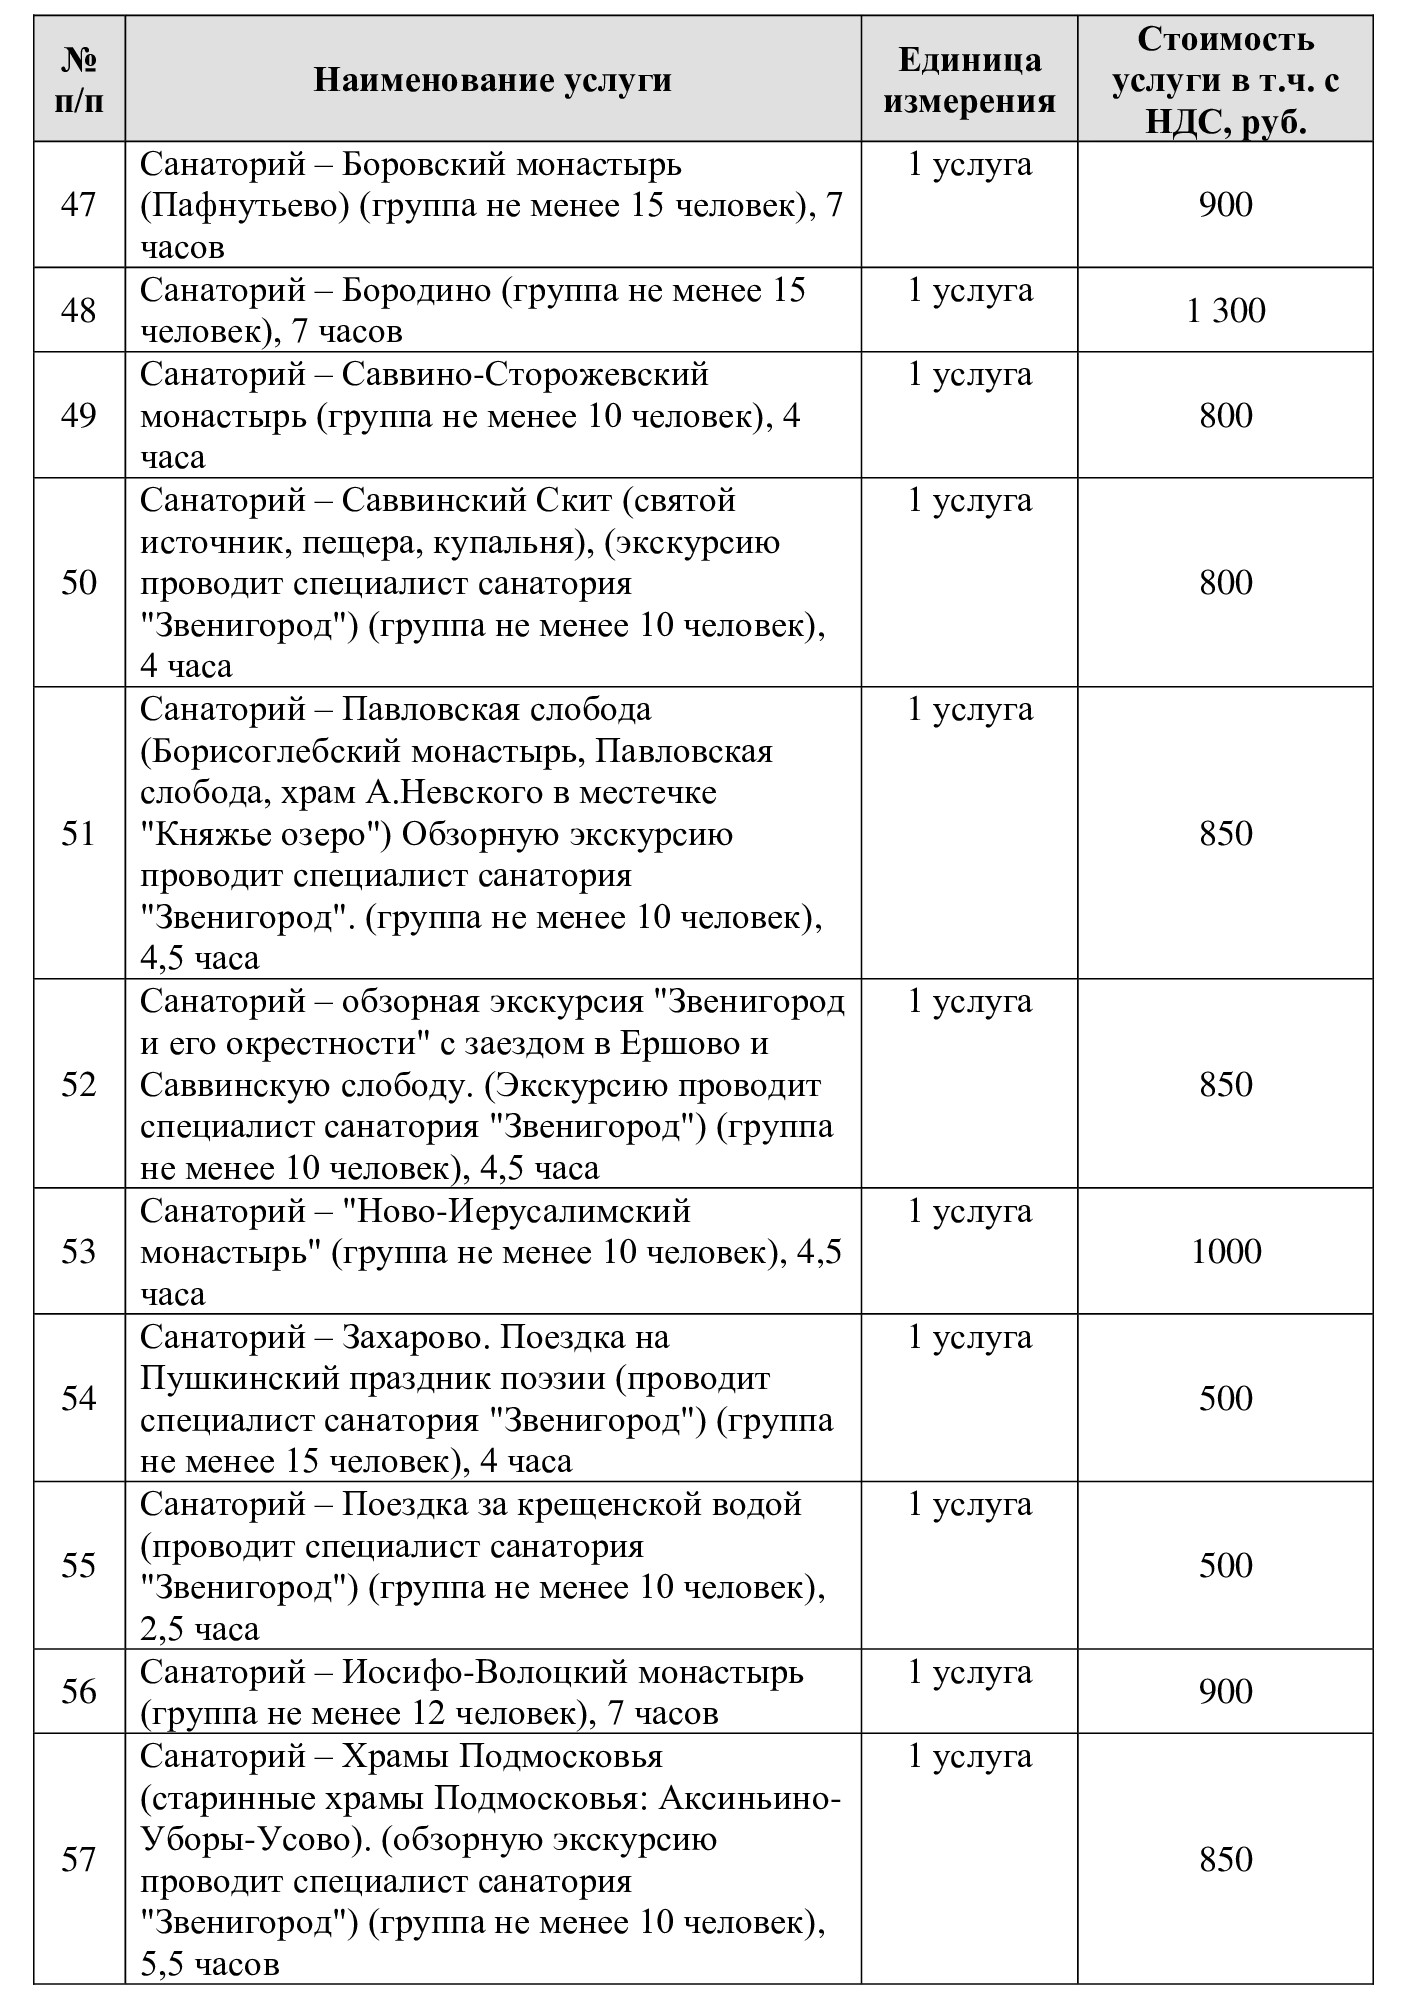 Цены на услуги в Санаторий "Введенское" (Звенигород)